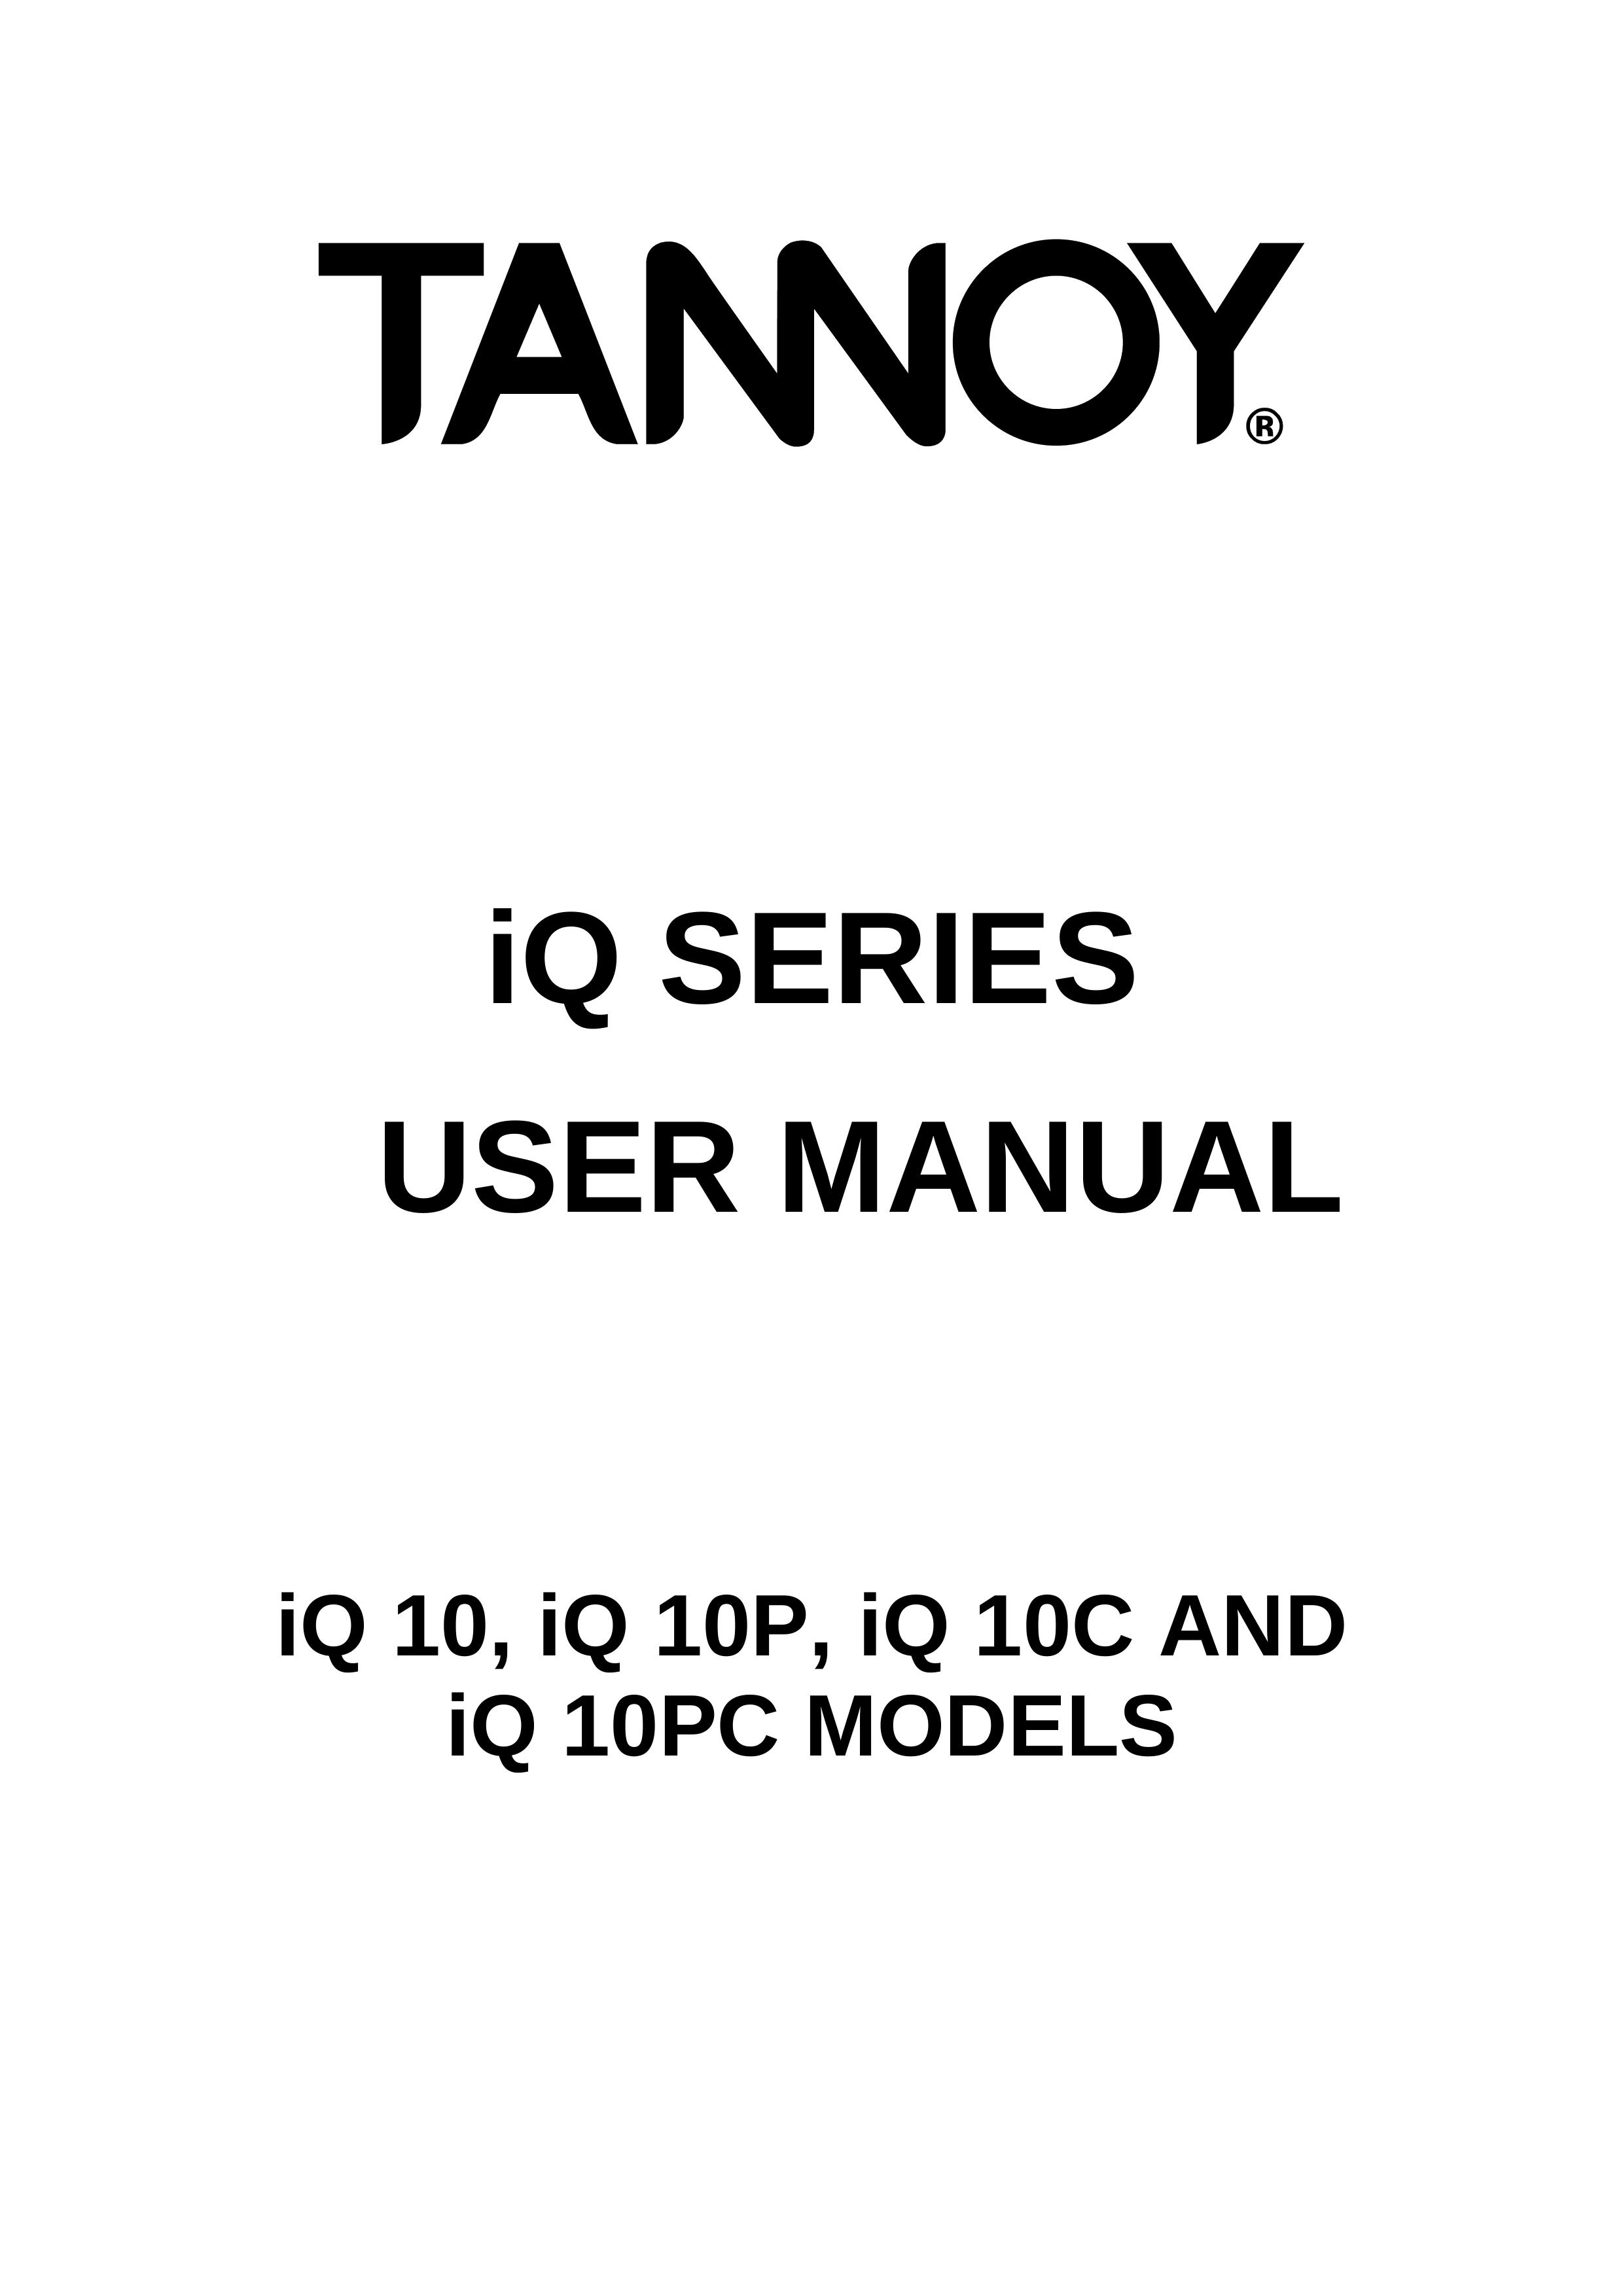 3Com iQ 10P Refrigerator User Manual